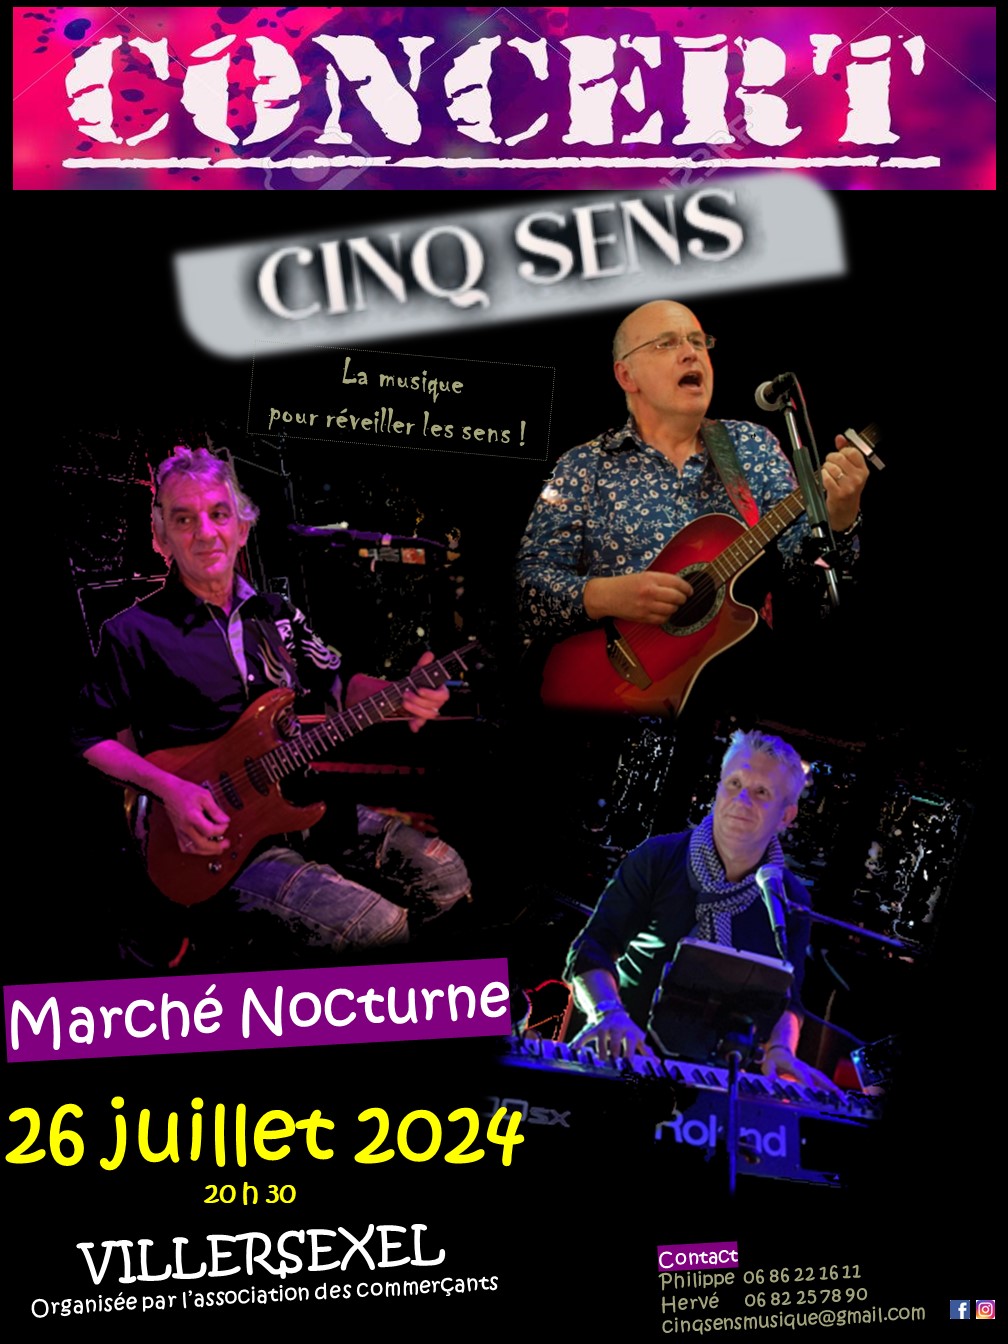 Marché Nocturne & Concert